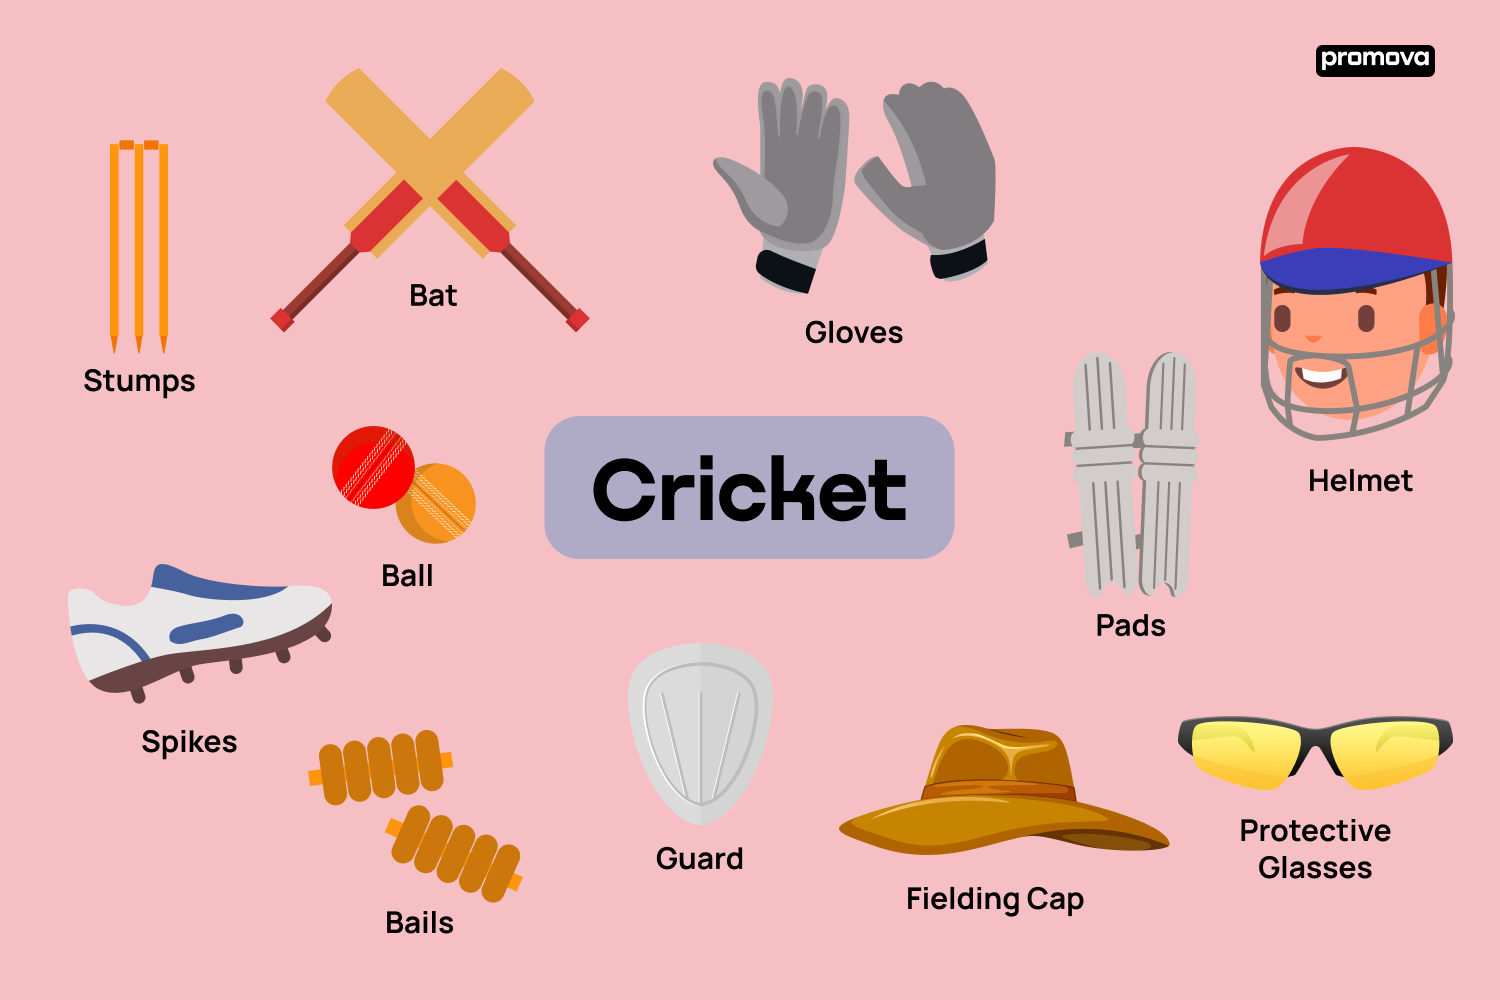 Descubre el vocabulario del deporte de cricket en inglés